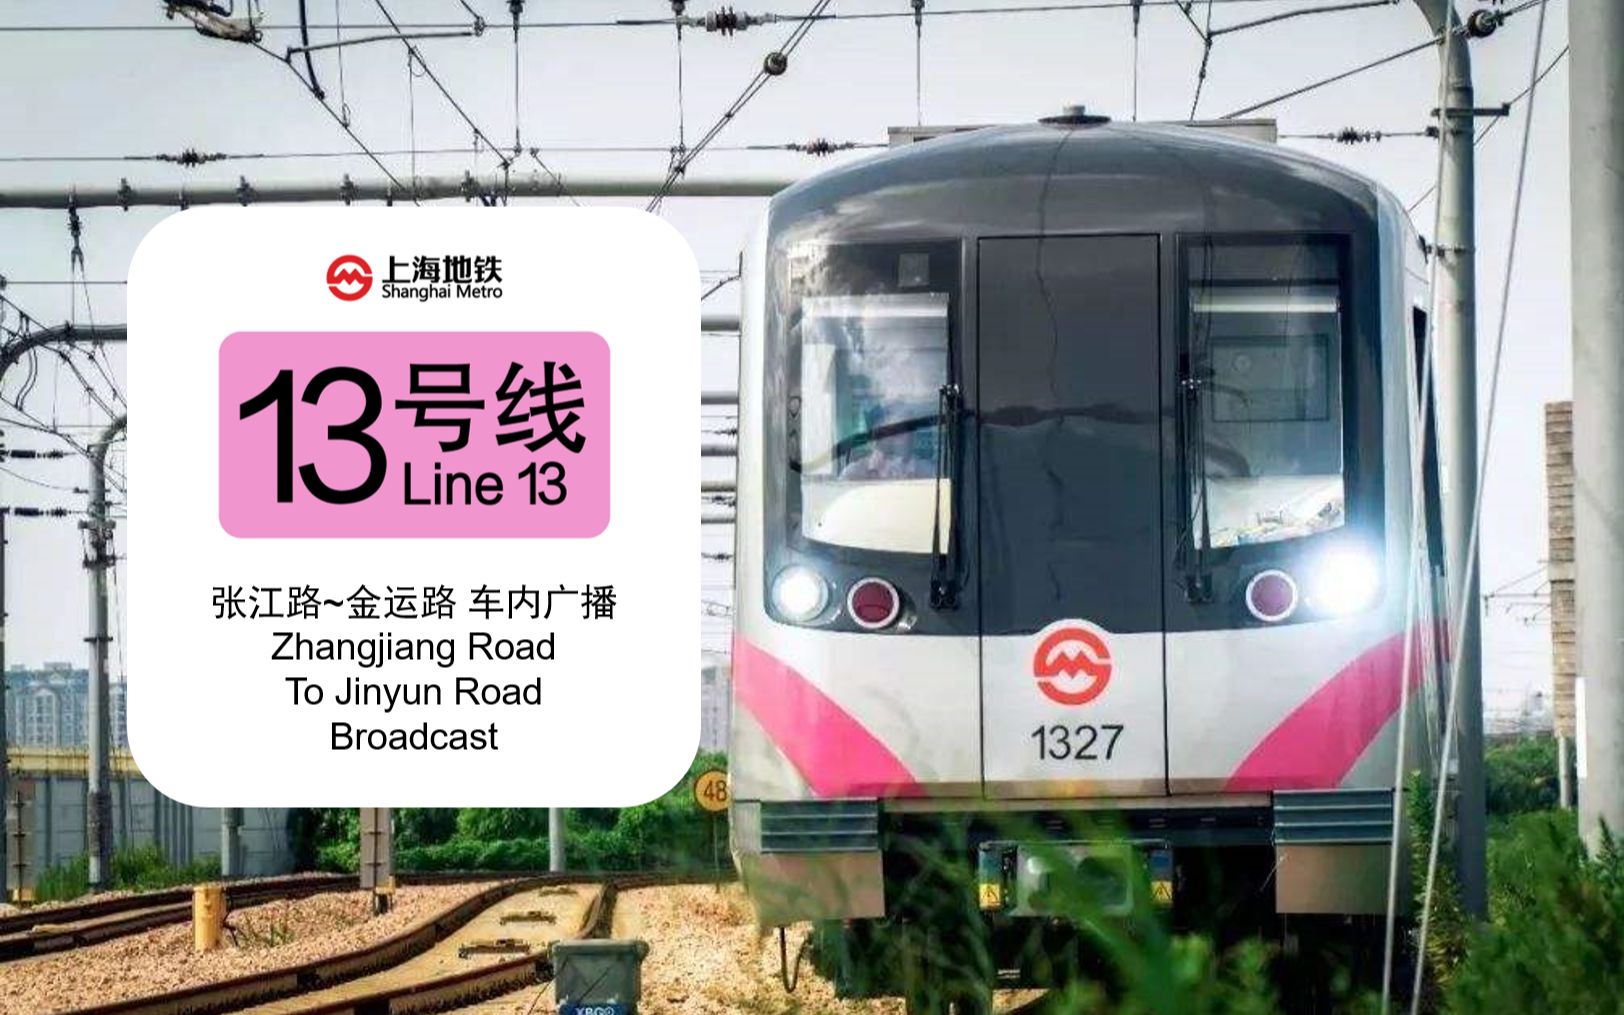 【世博印记】上海地铁13号线 张江路→金运路 全程报站广播